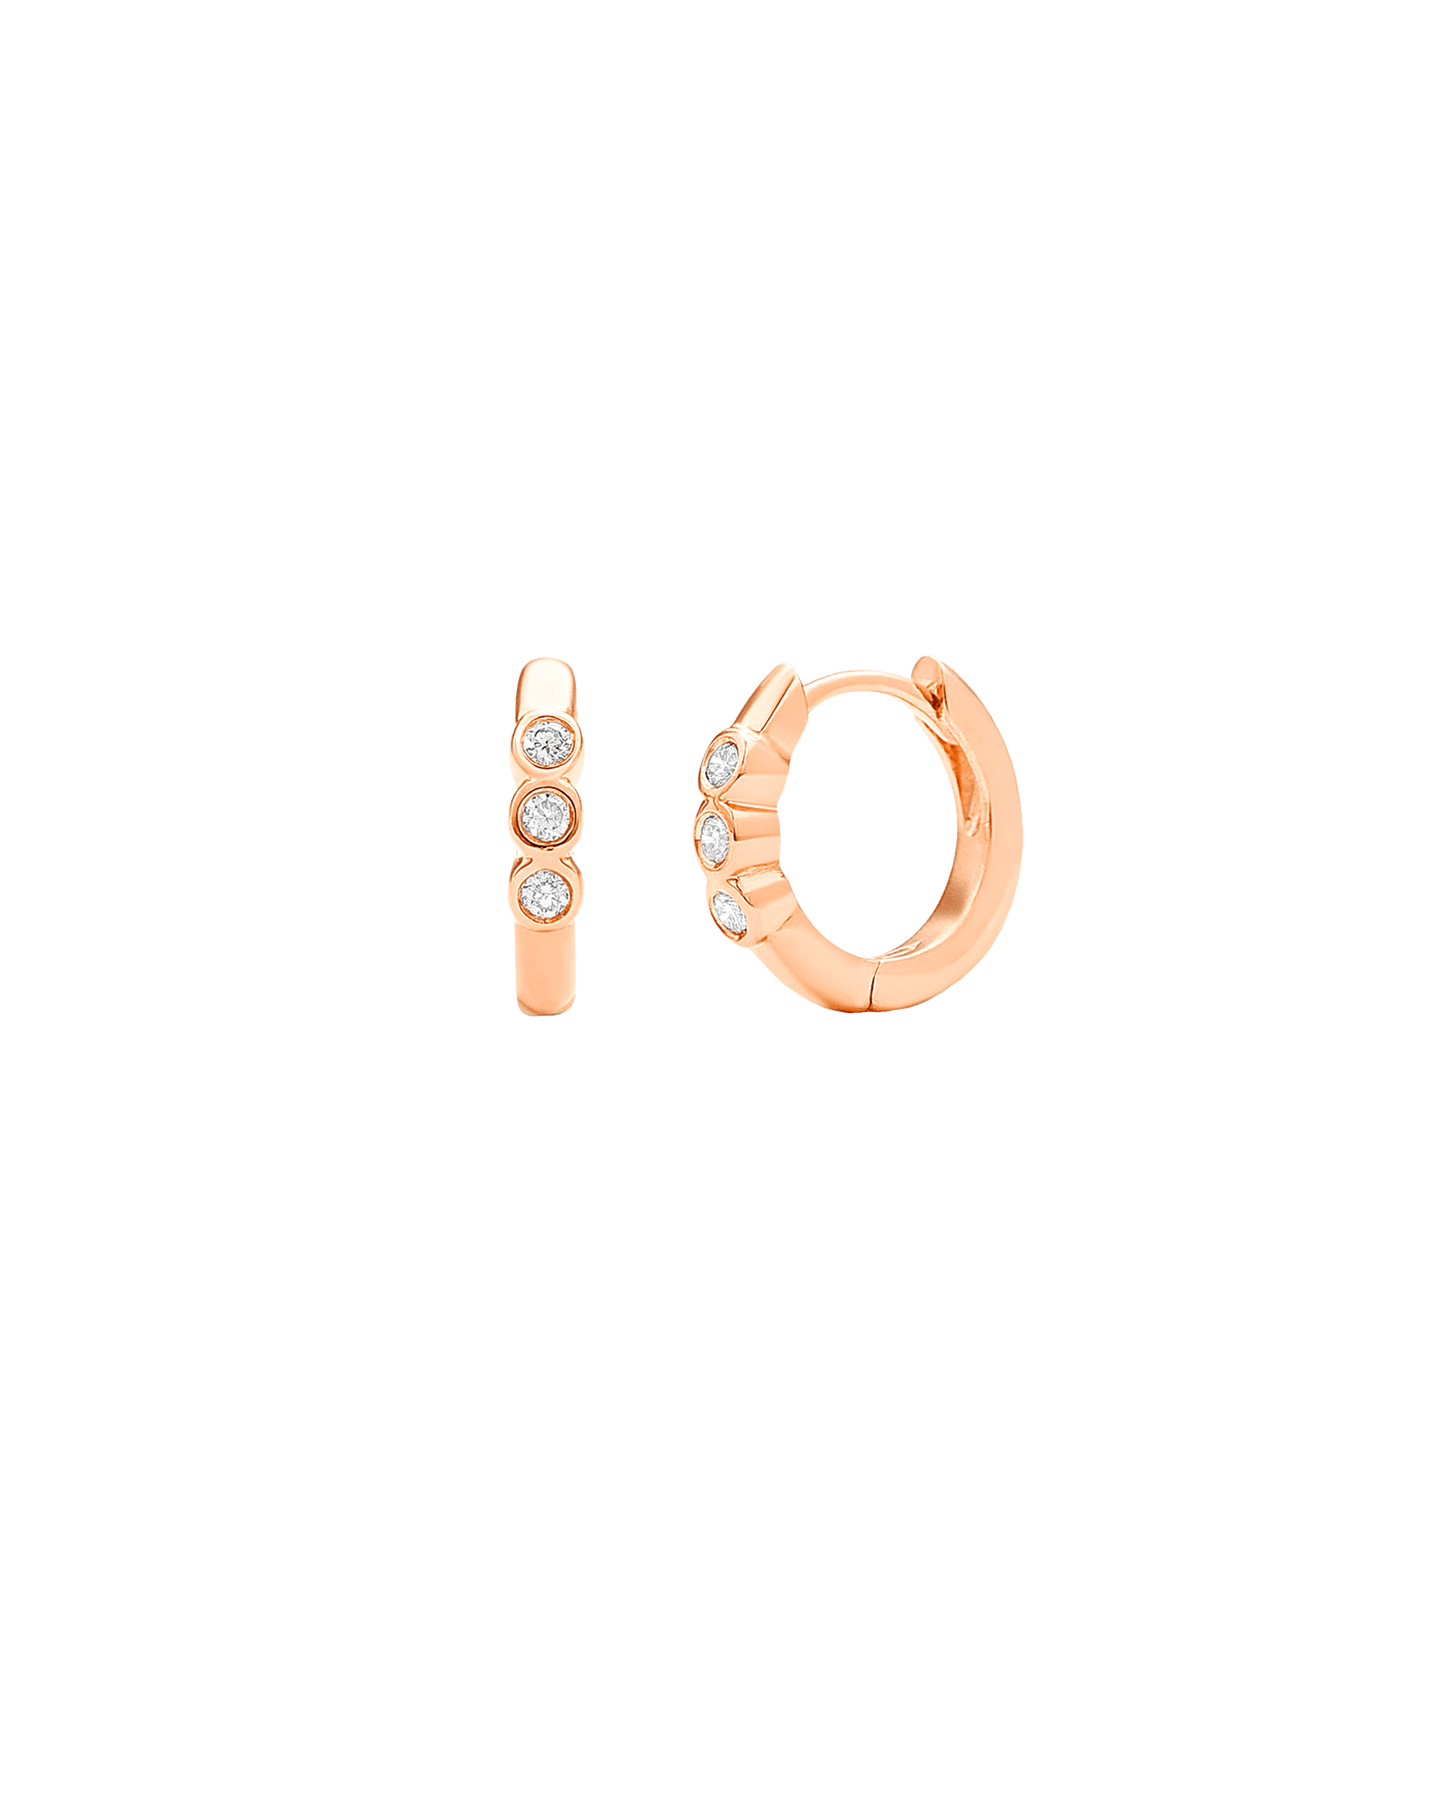 3 Dot Diamond Earrings - 14K White Gold Earrings magal-dev 